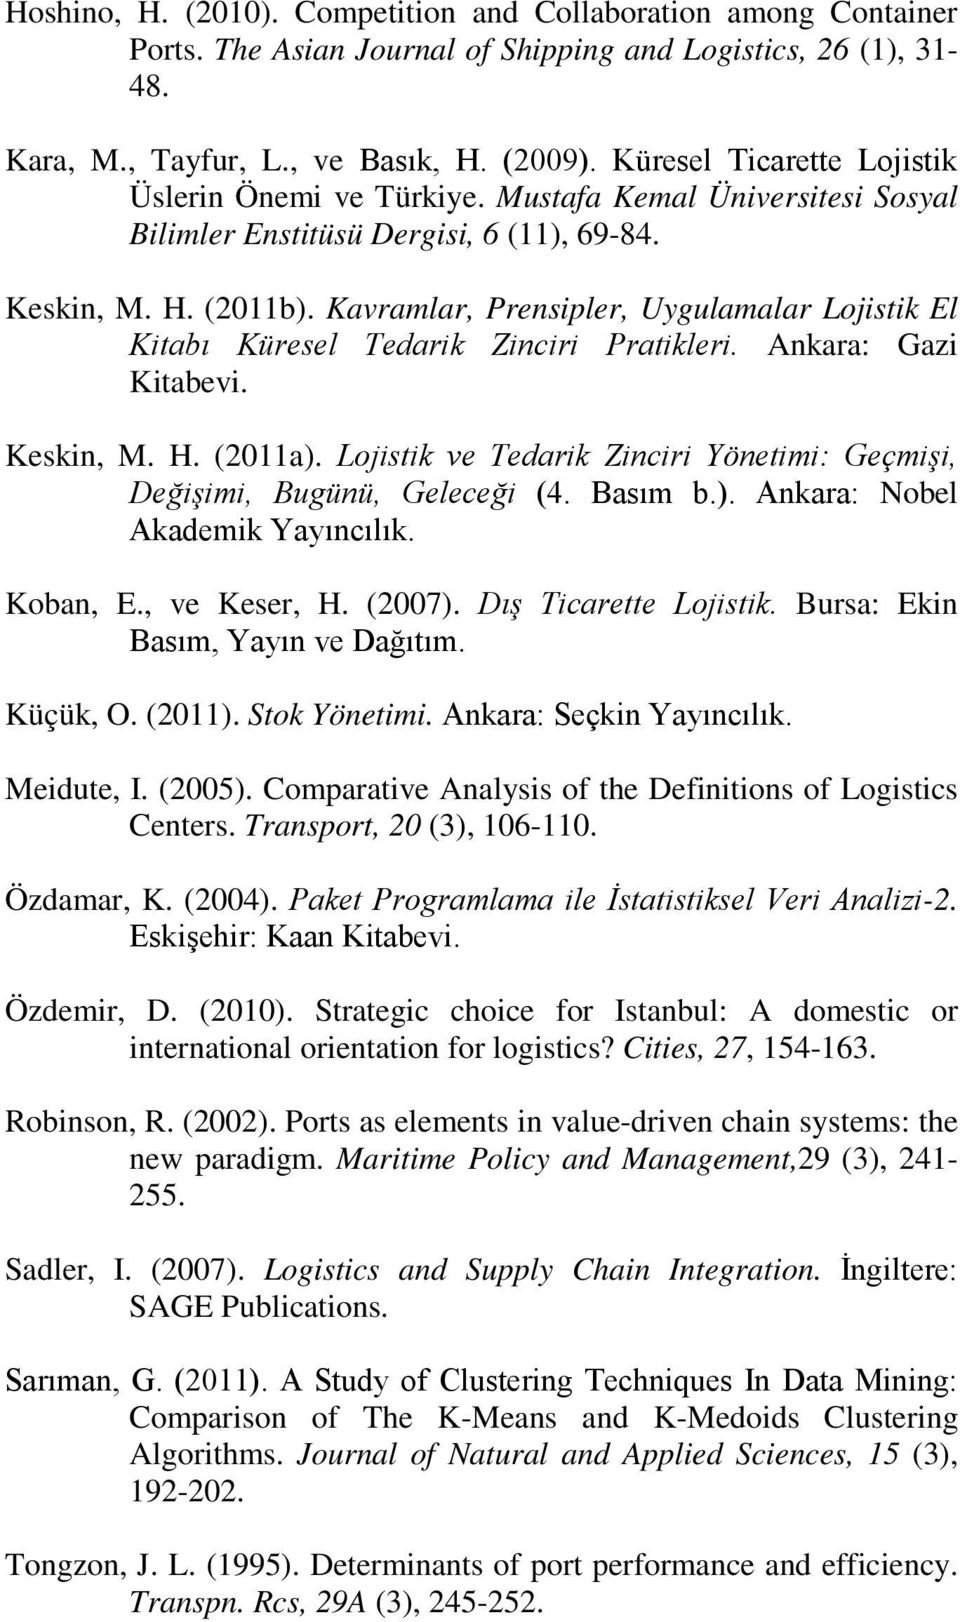 Kavramlar, Prensipler, Uygulamalar Lojistik El Kitabı Küresel Tedarik Zinciri Pratikleri. Ankara: Gazi Kitabevi. Keskin, M. H. (2011a).